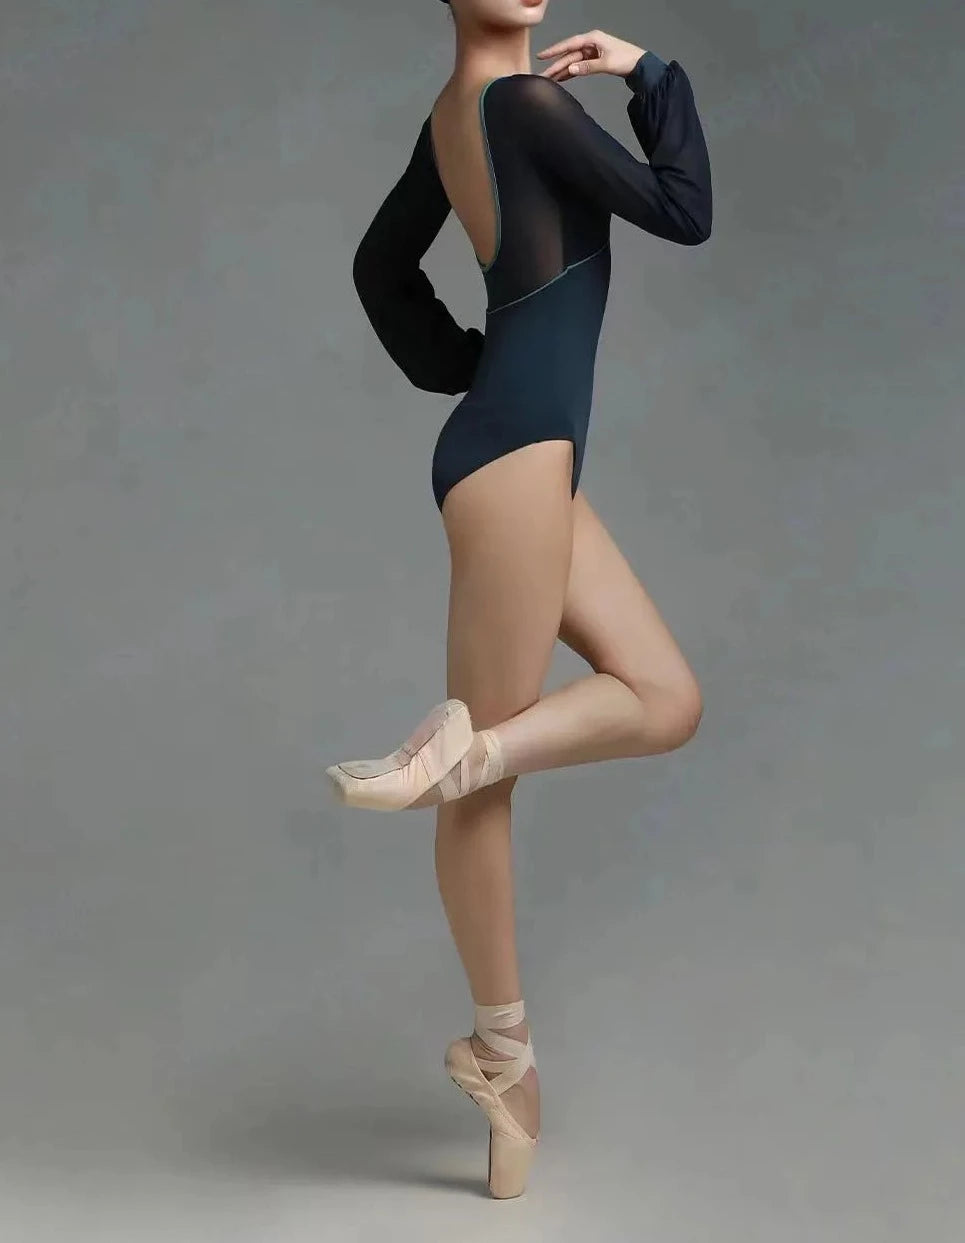 Balletttänzerin, die einen langärmligen schwarzen Trikotanzug trägt